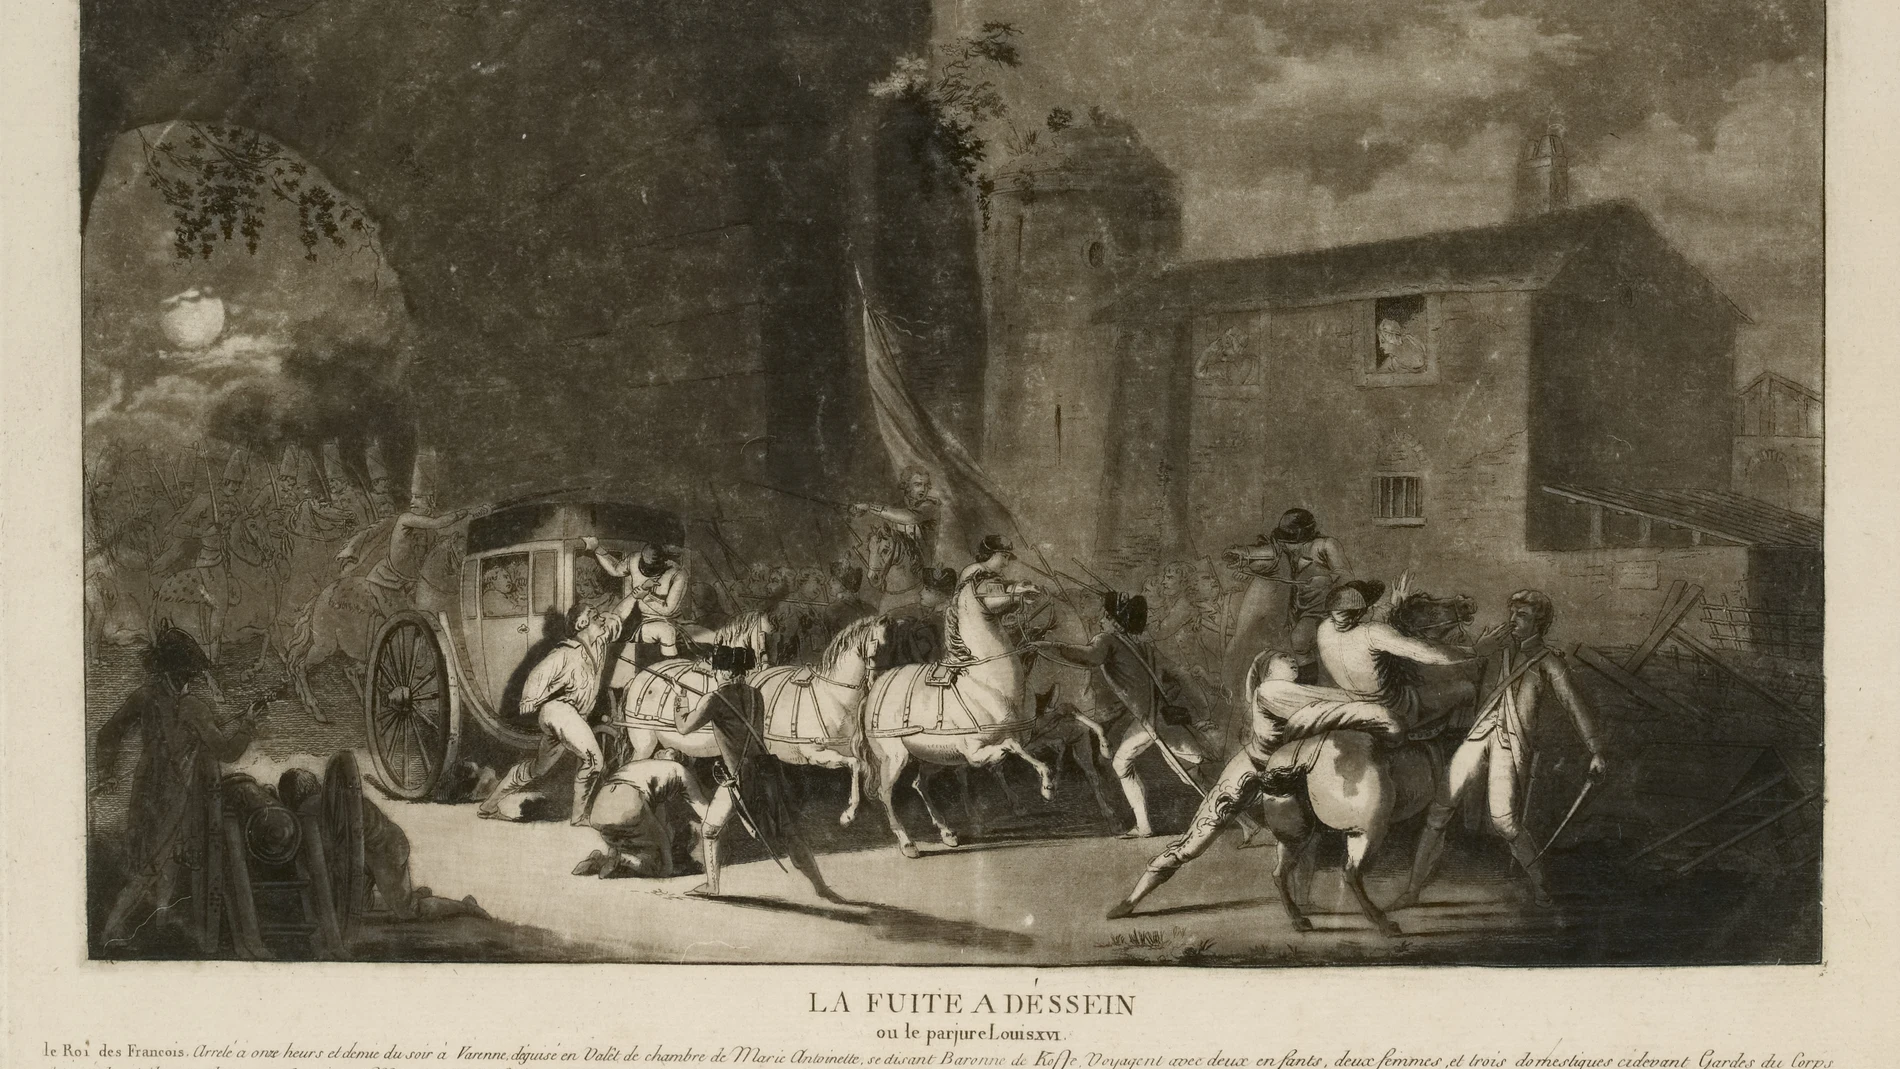 Grabado que representa el momento del arresto de la familia real francesa durante la fuga de Varennes